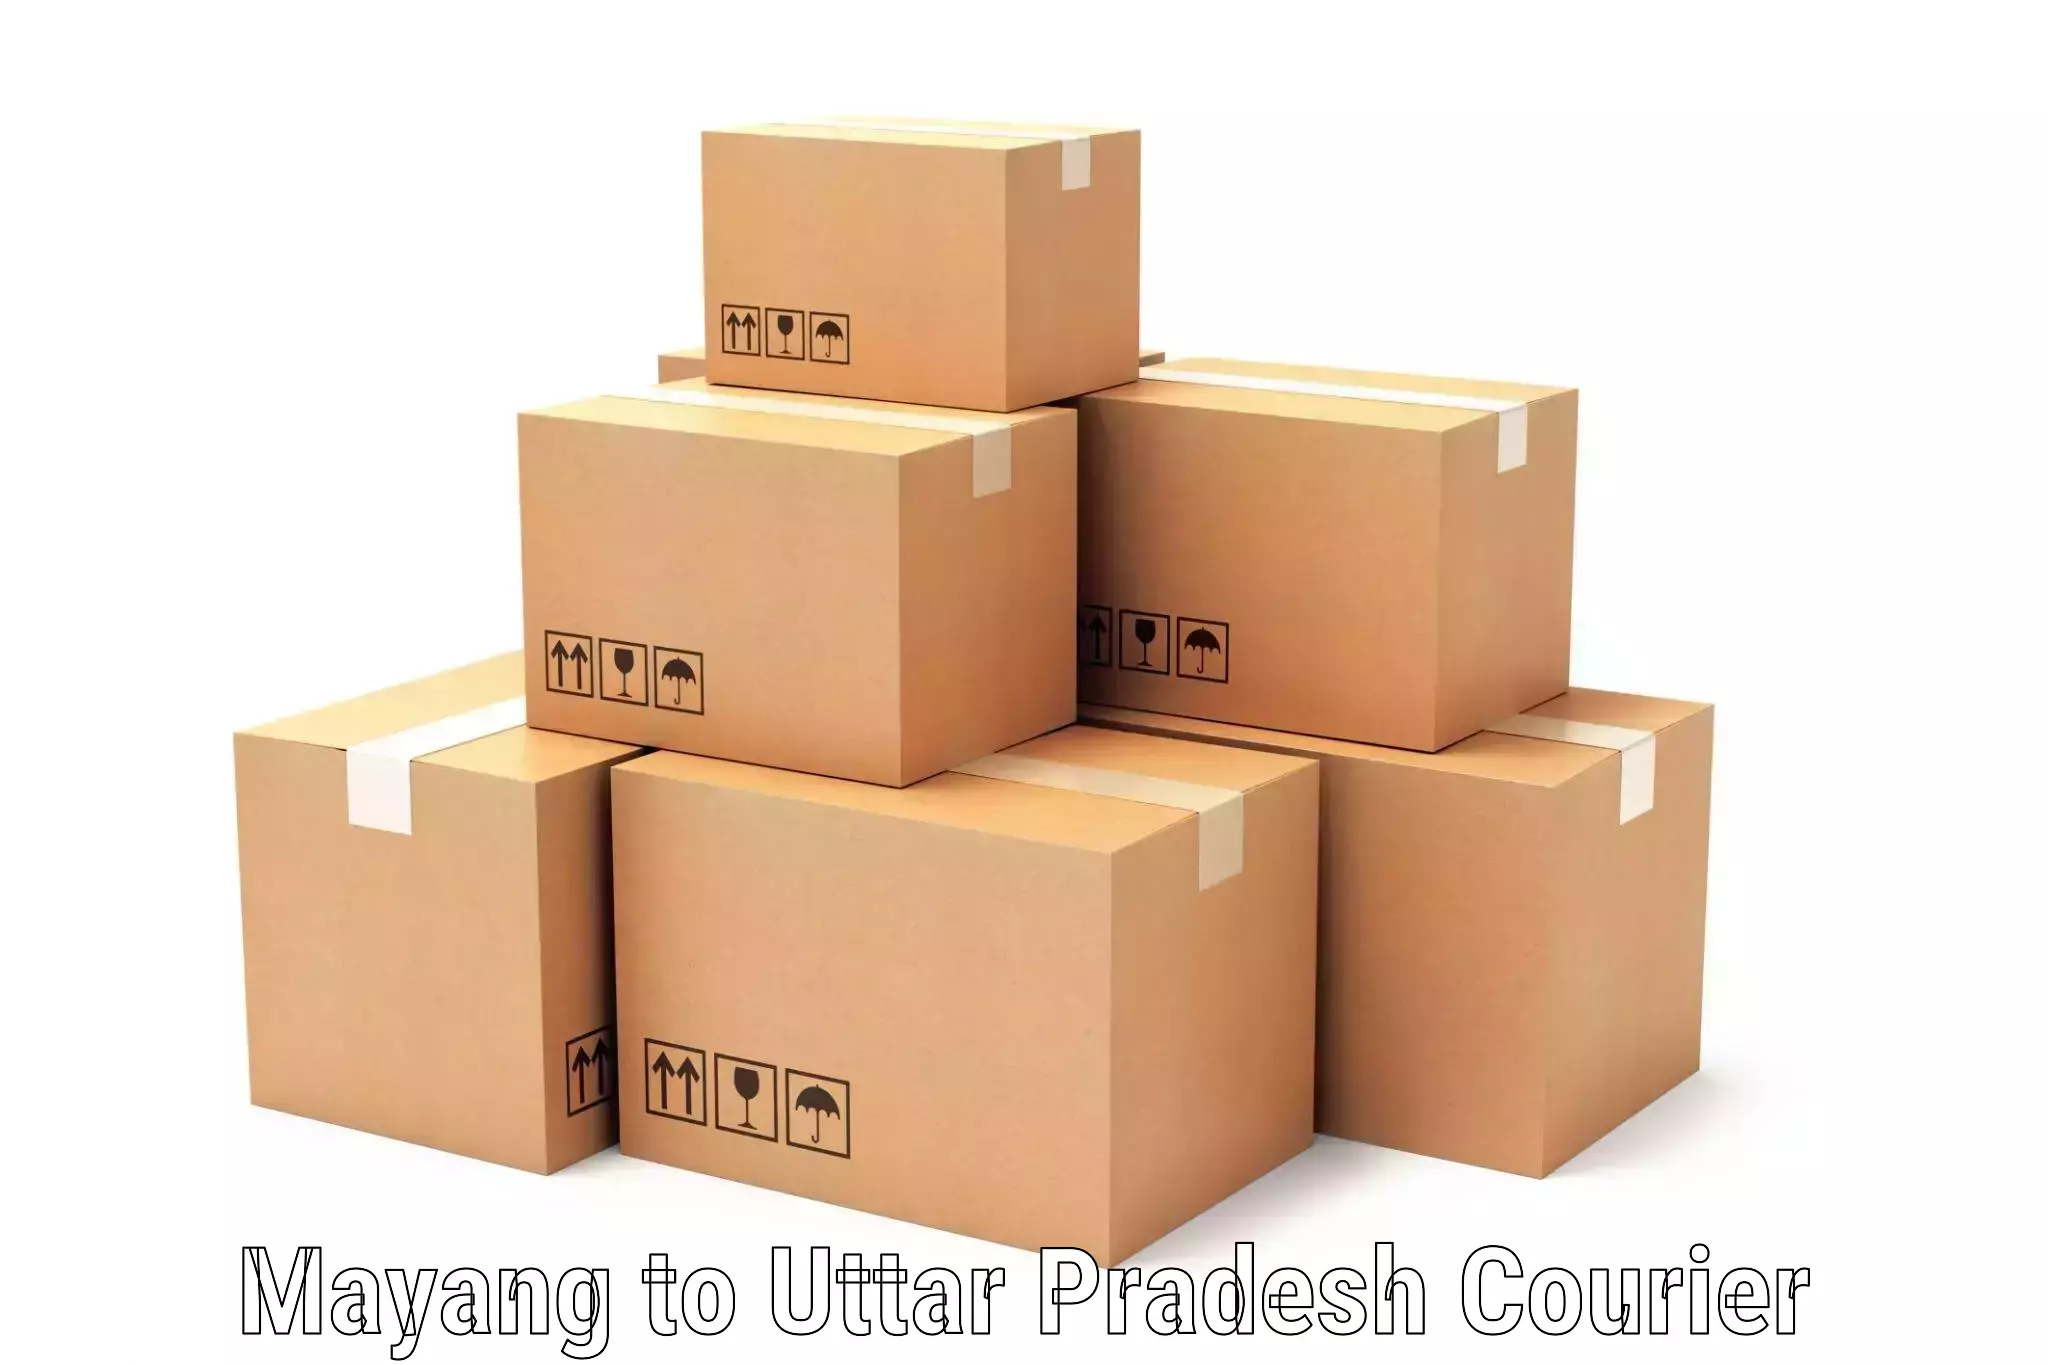 Express logistics providers Mayang to Nariwari